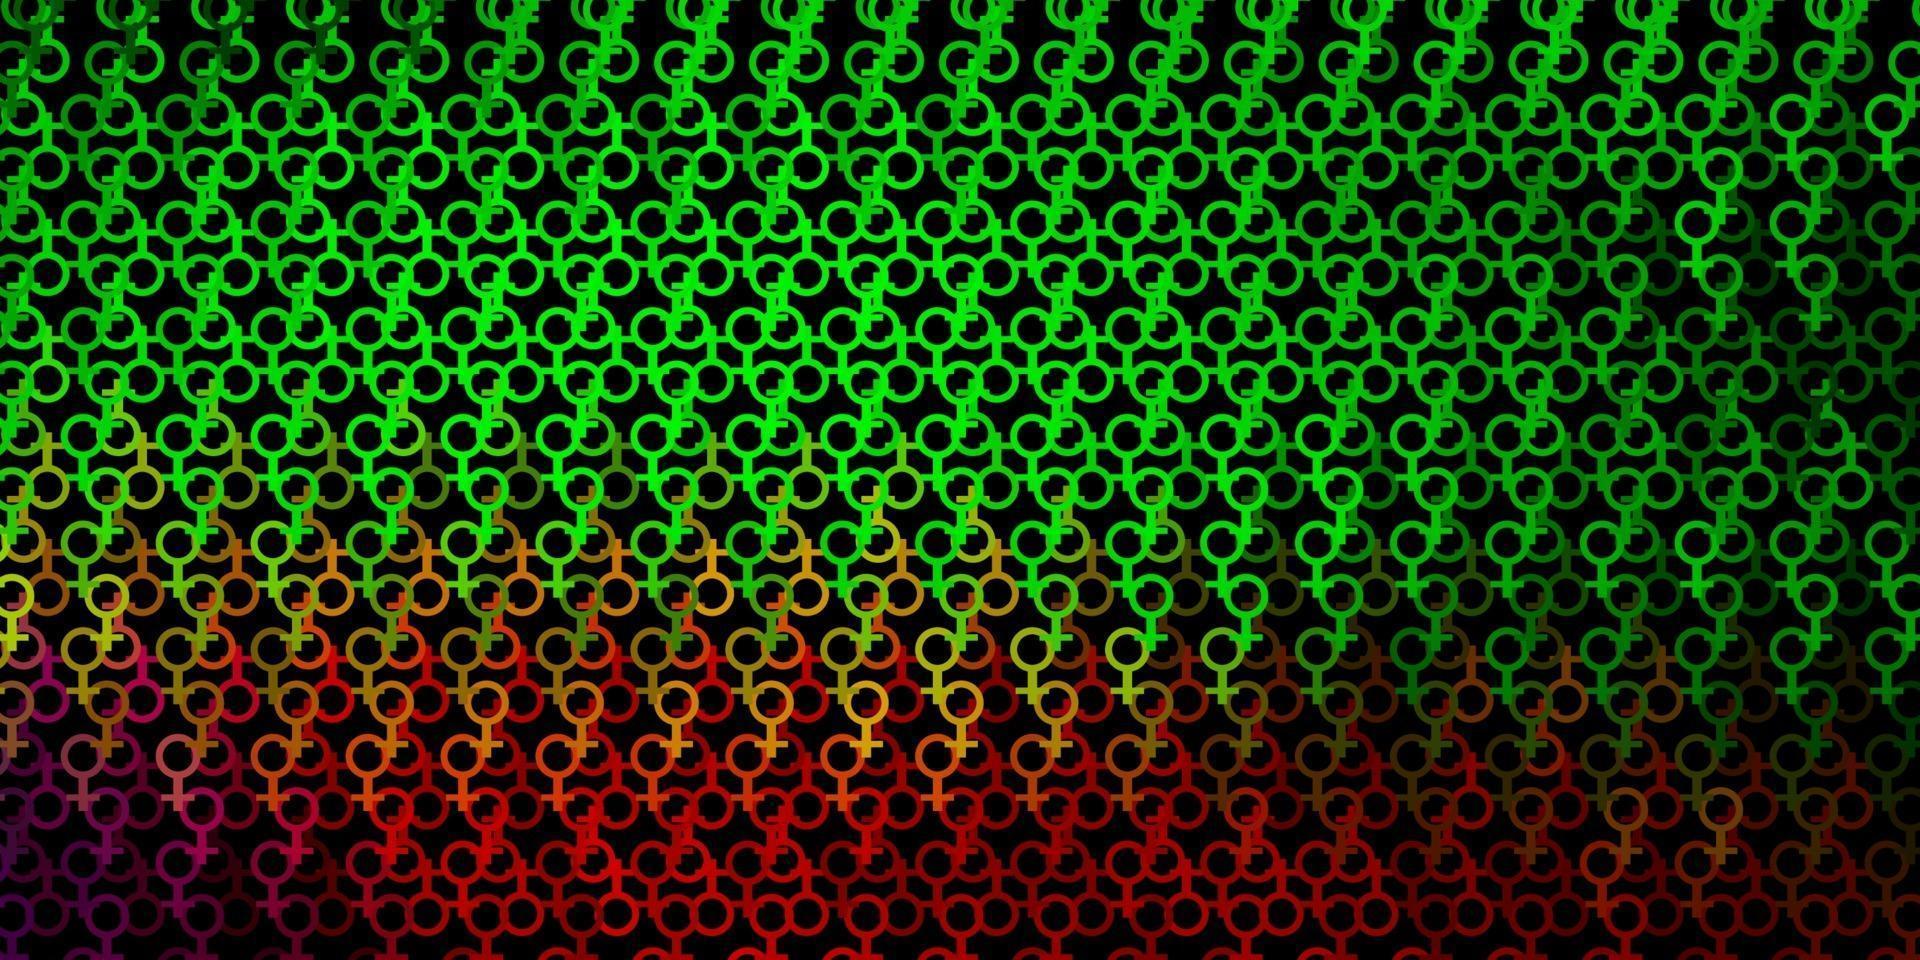 mörkgrön, röd vektormall med esoteriska tecken. vektor